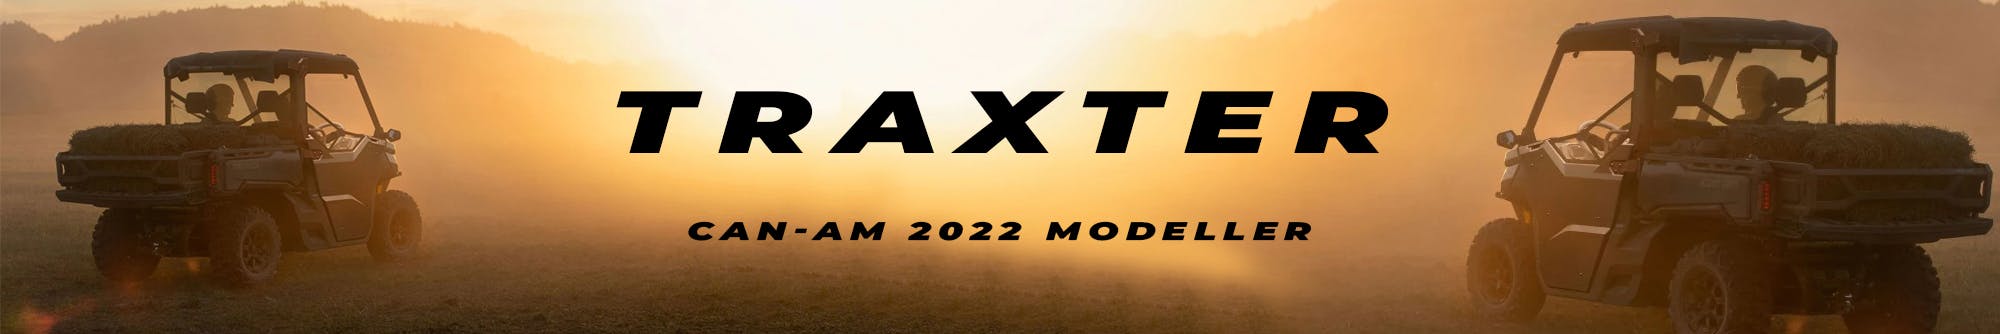 Traxter 2022 Modeller